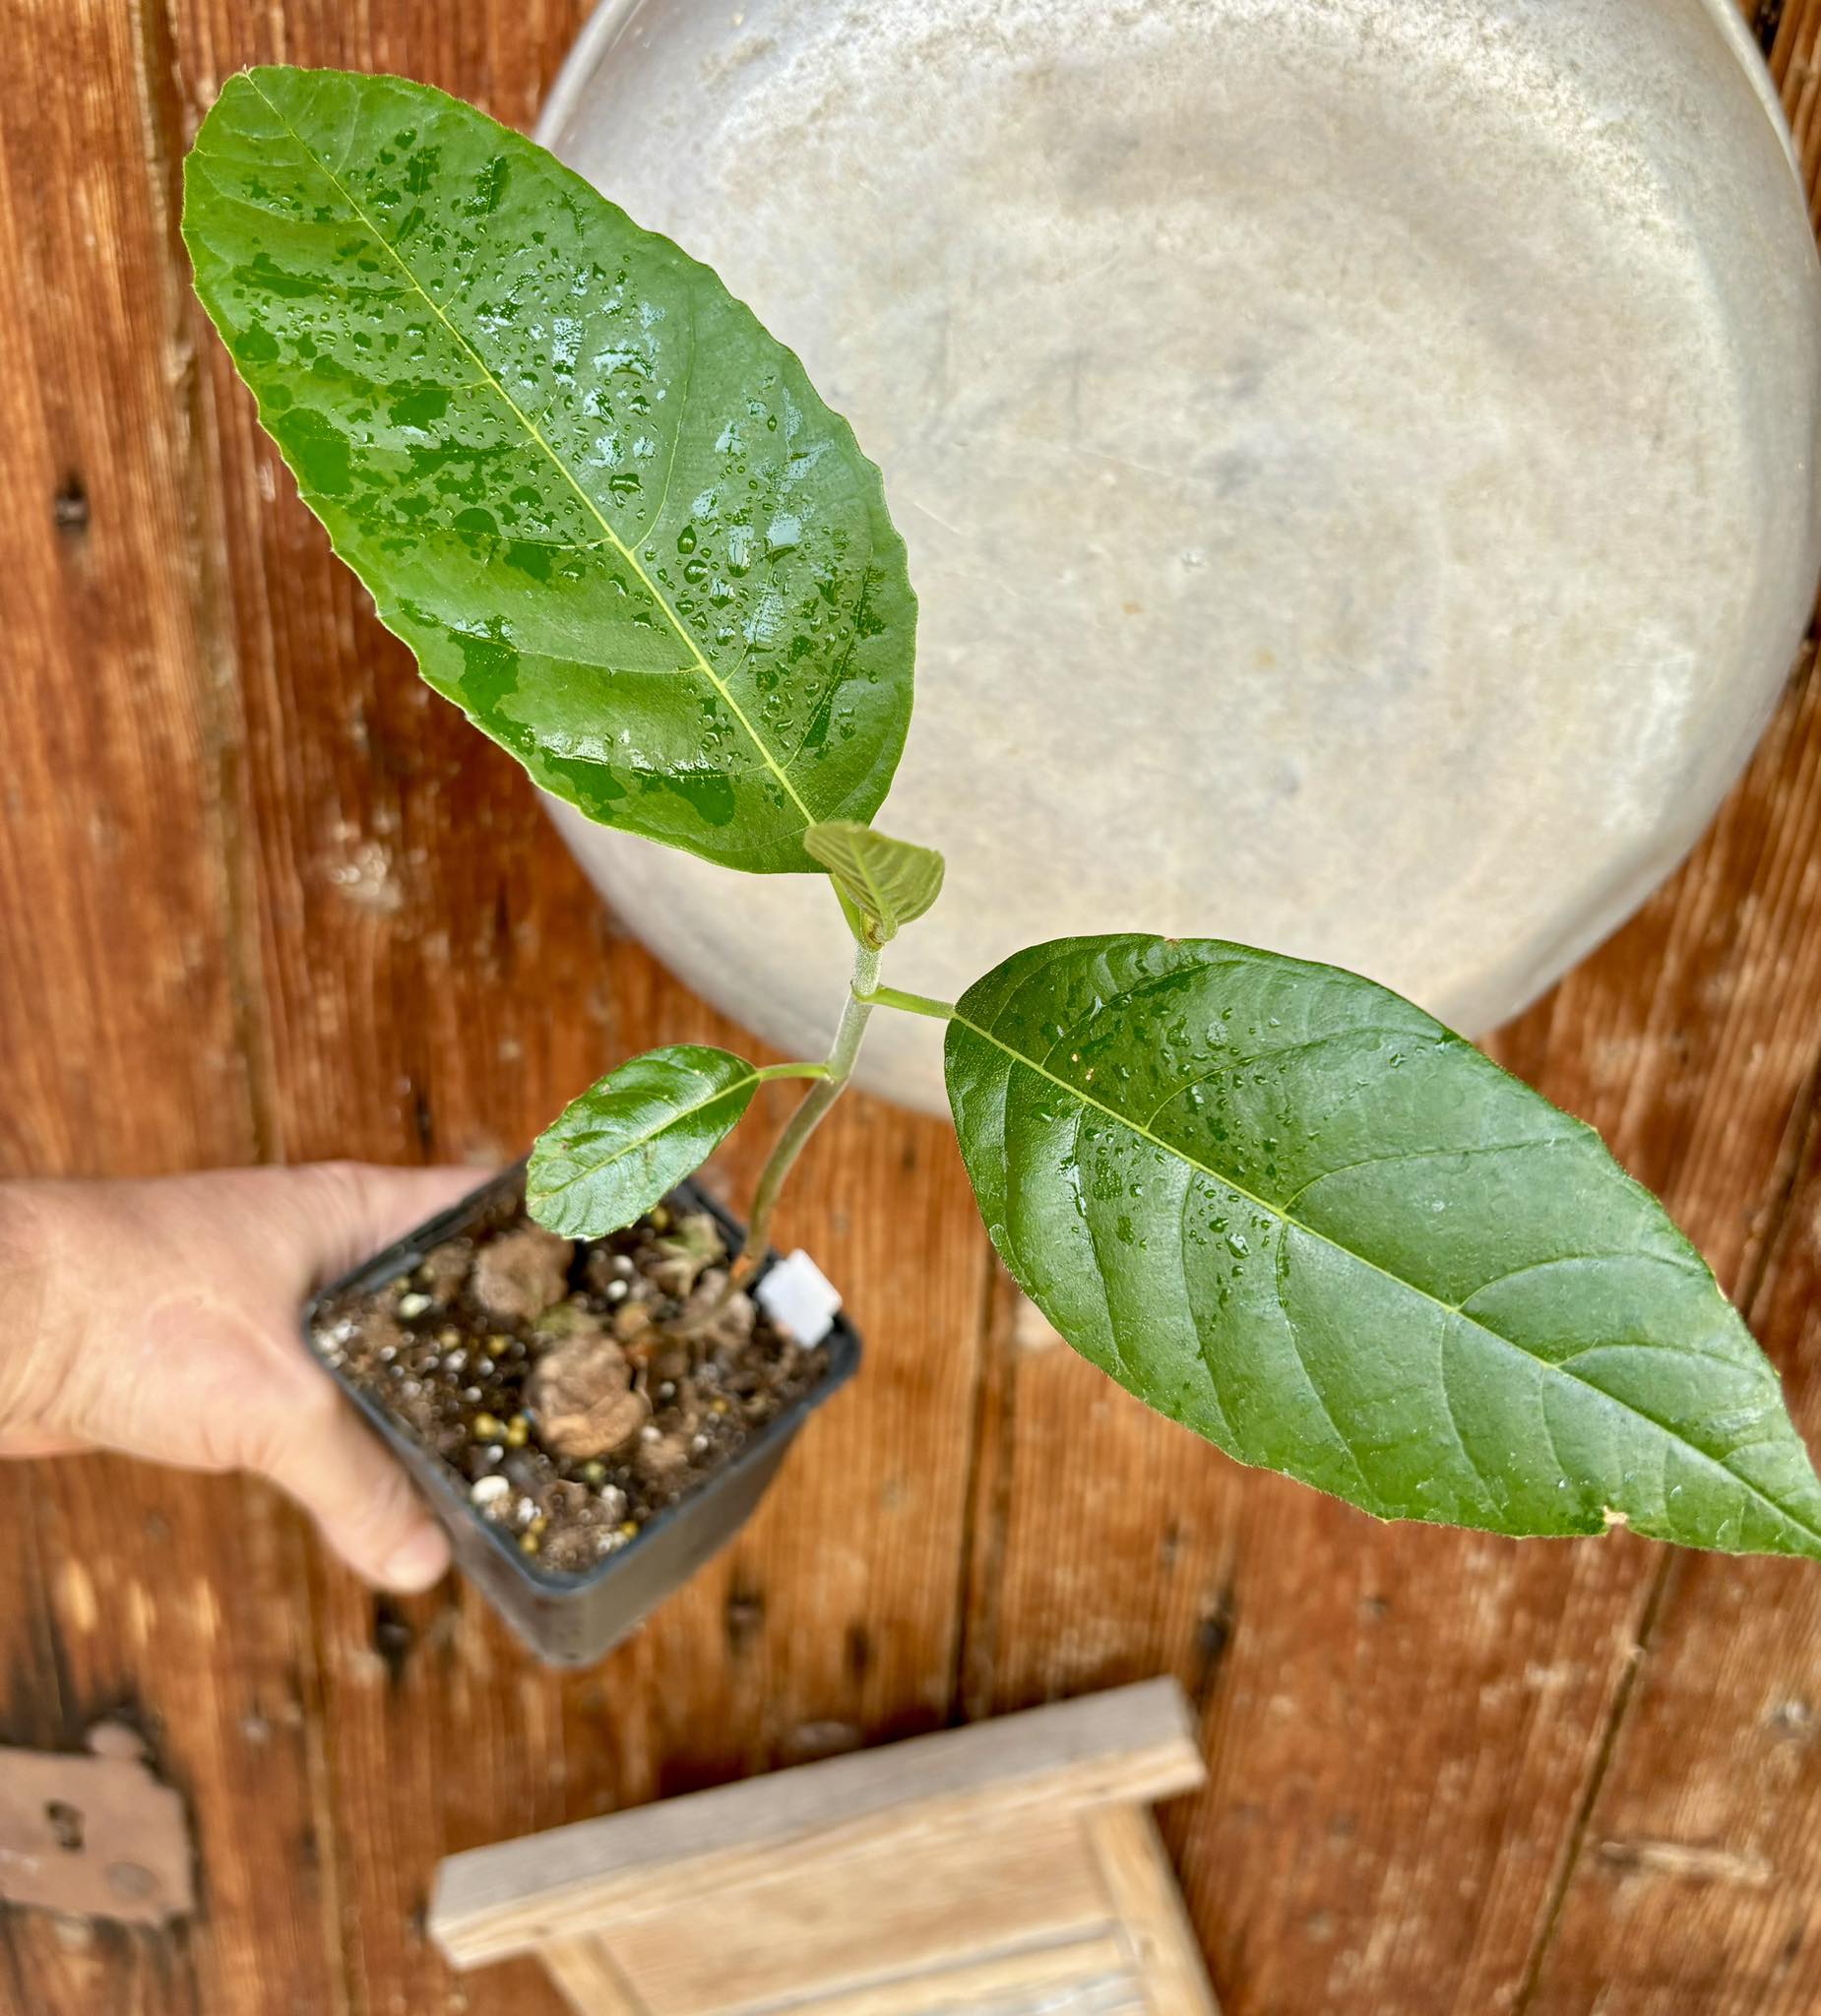 Artocarpus camansi - Breadnut / Brotnuss- 1 potted seedling / 1 getopfter Sämling